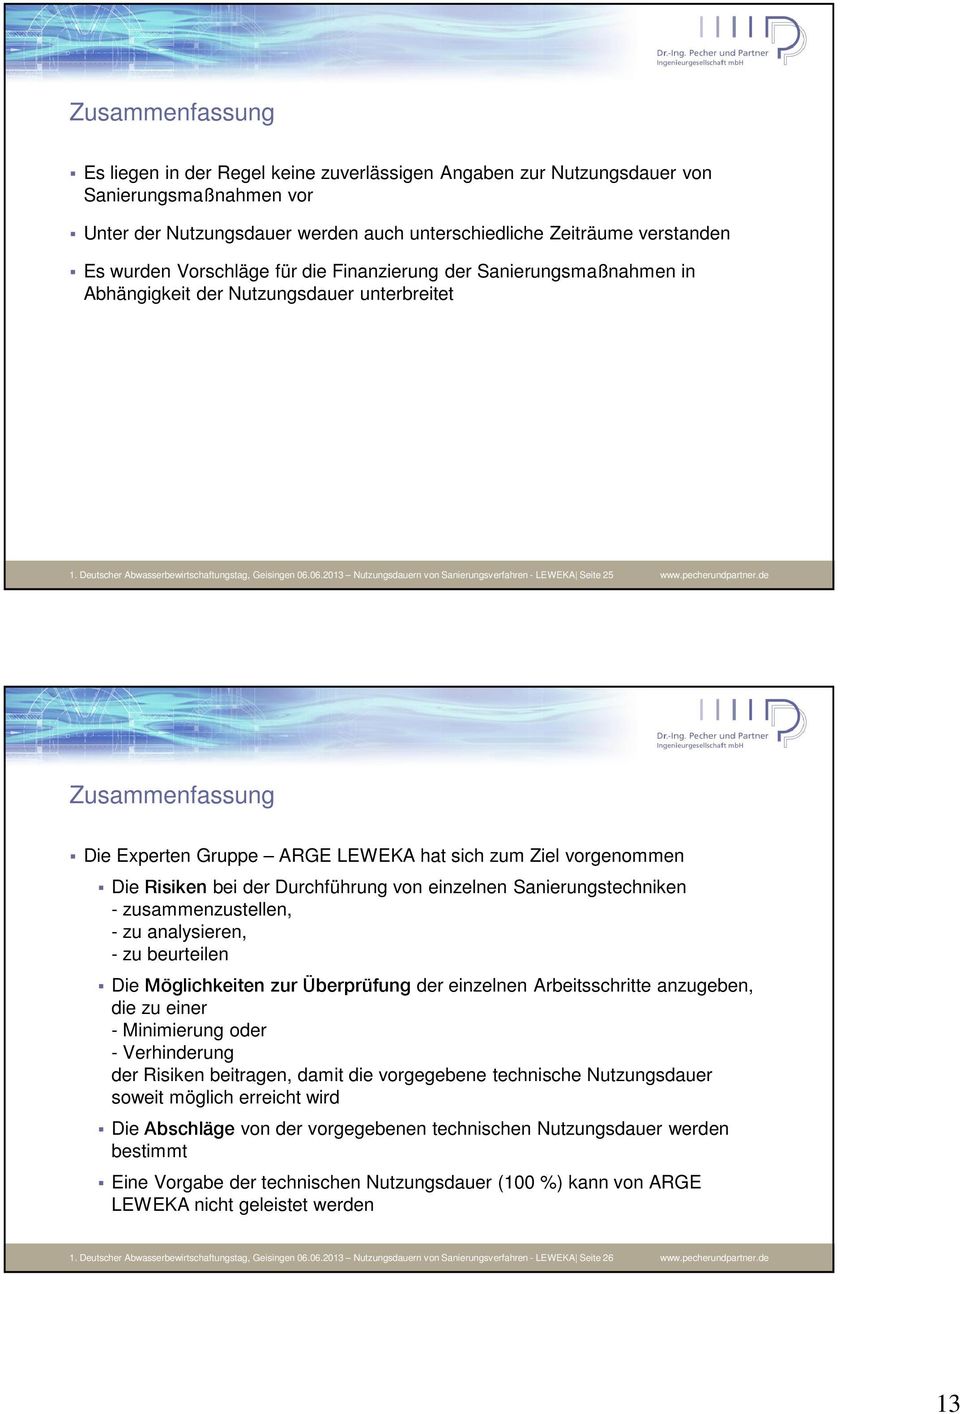 06.2013 Nutzungsdauern von Sanierungsverfahren - LEWEKA Seite 25 www.pecherundpartner.